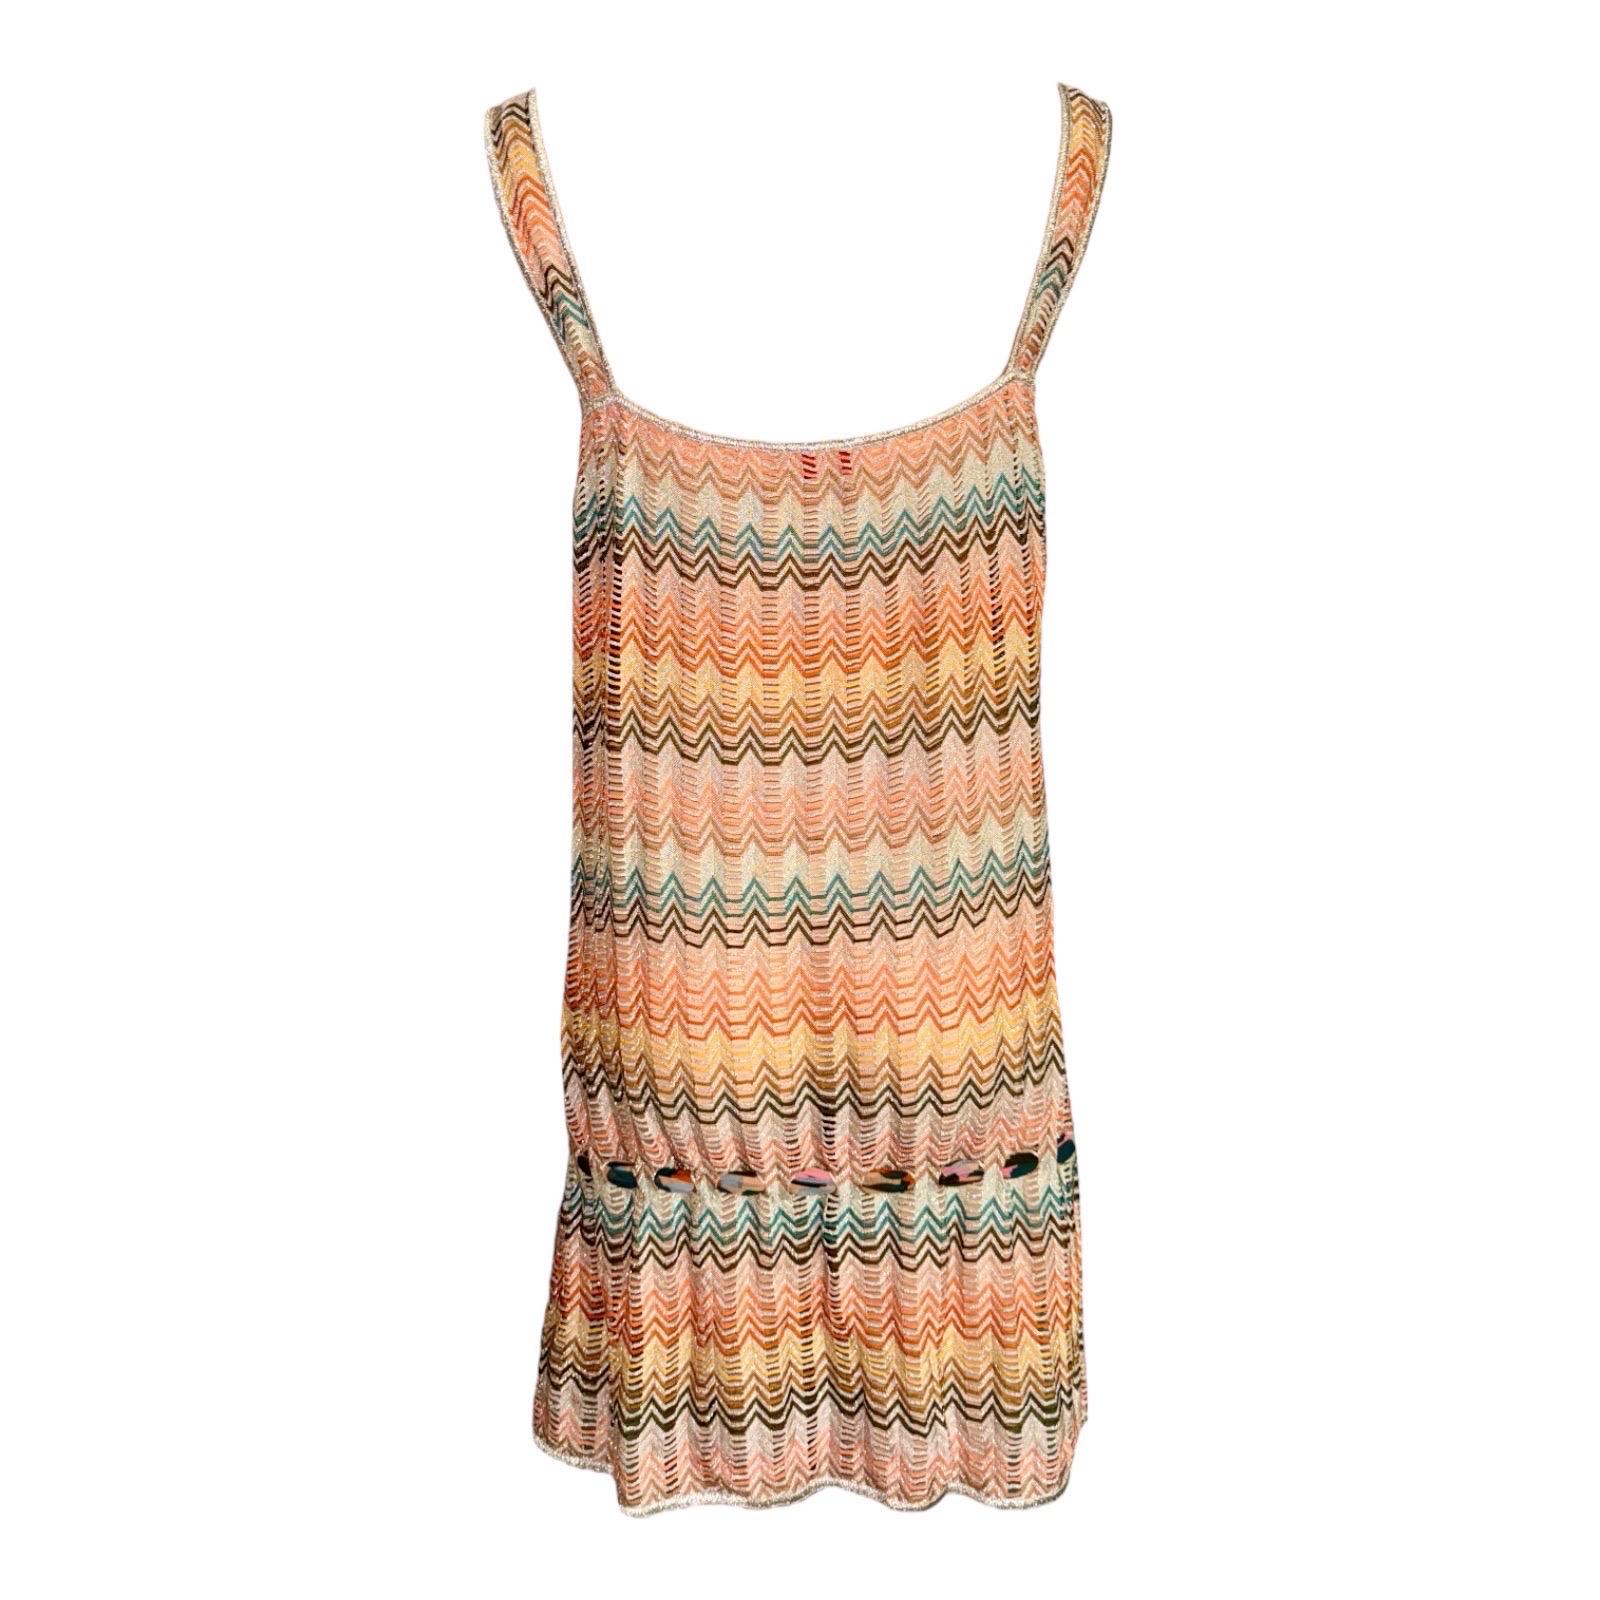 Cette robe multicolore en maille transparente à mouchetures de lurex de Missoni est une pièce glamour pour les vacances. Associée à une capeline et à des sandales, cette robe confère une allure décontractée à vos tenues de plage. Habillez-le avec